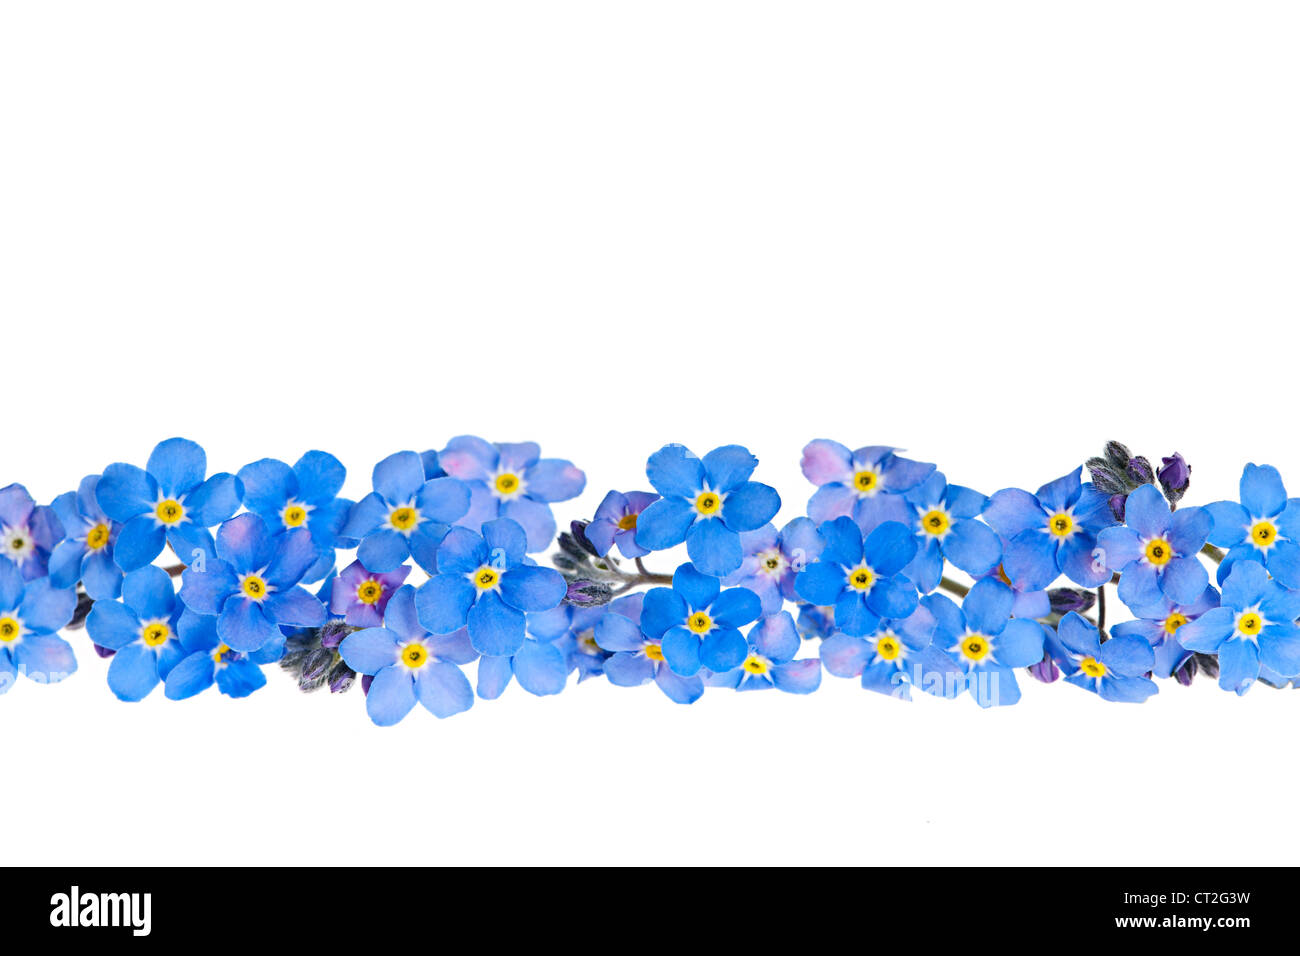 Anordnung der blauen Vergissmeinnicht Blumen isoliert auf weißem Hintergrund Stockfoto